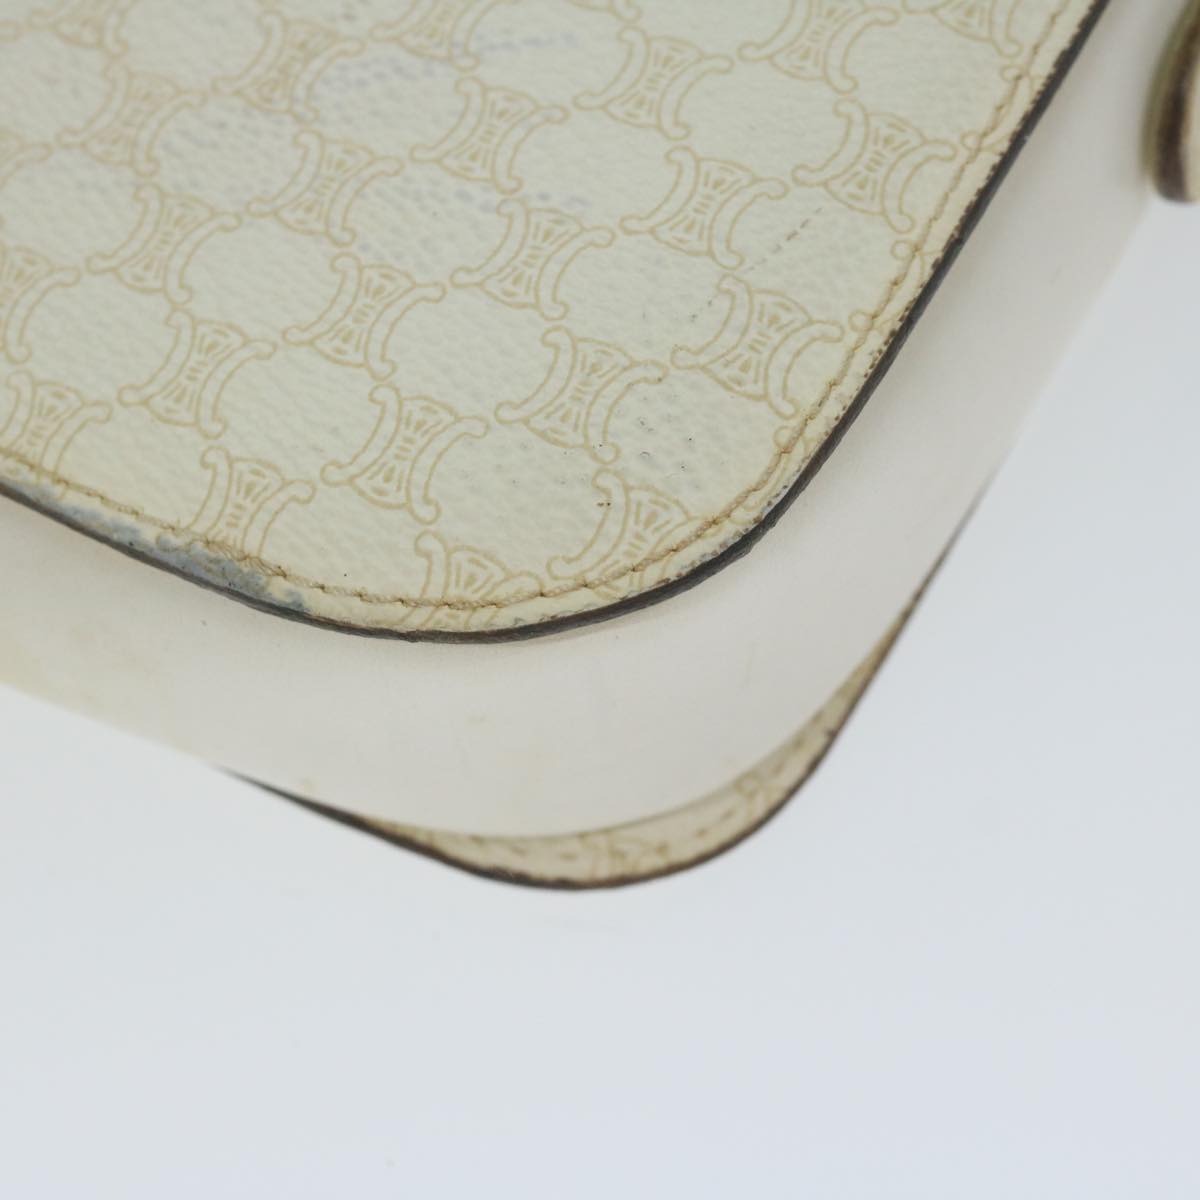 CELINE Macadam Canvas Shoulder Bag PVC Leather White Auth 62462